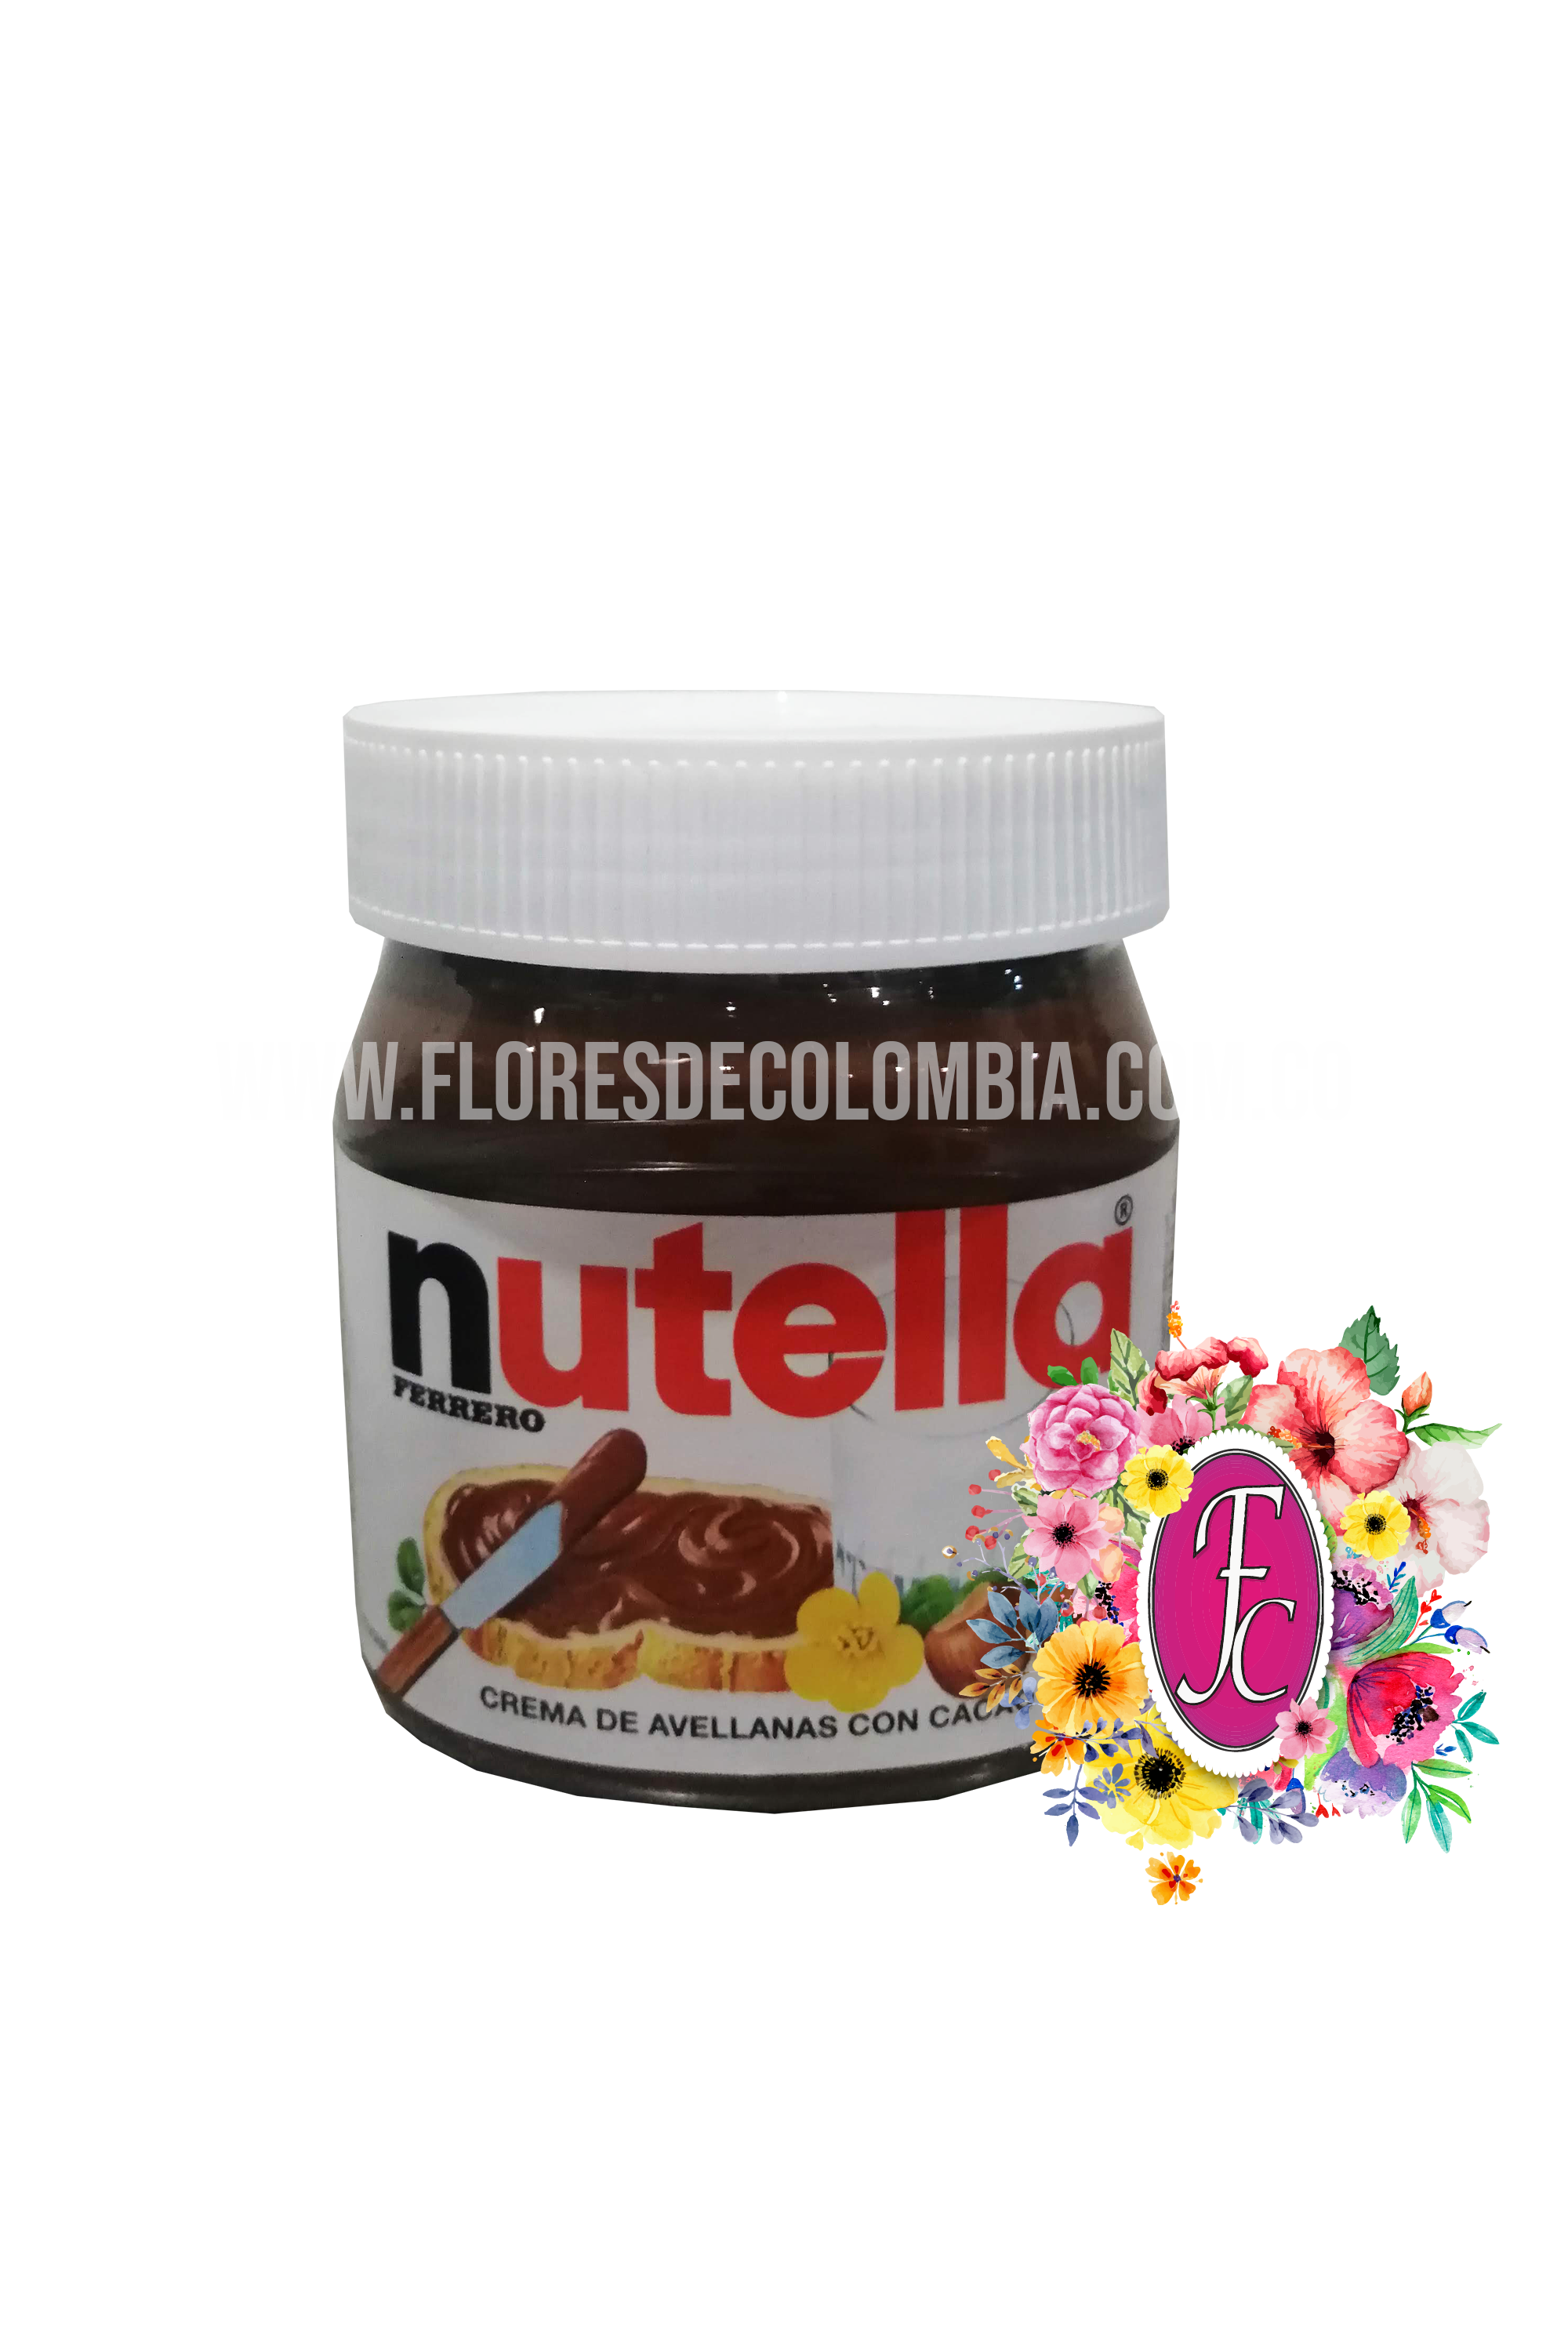 Frasco de Nutella 350g │ Flores de Colombia